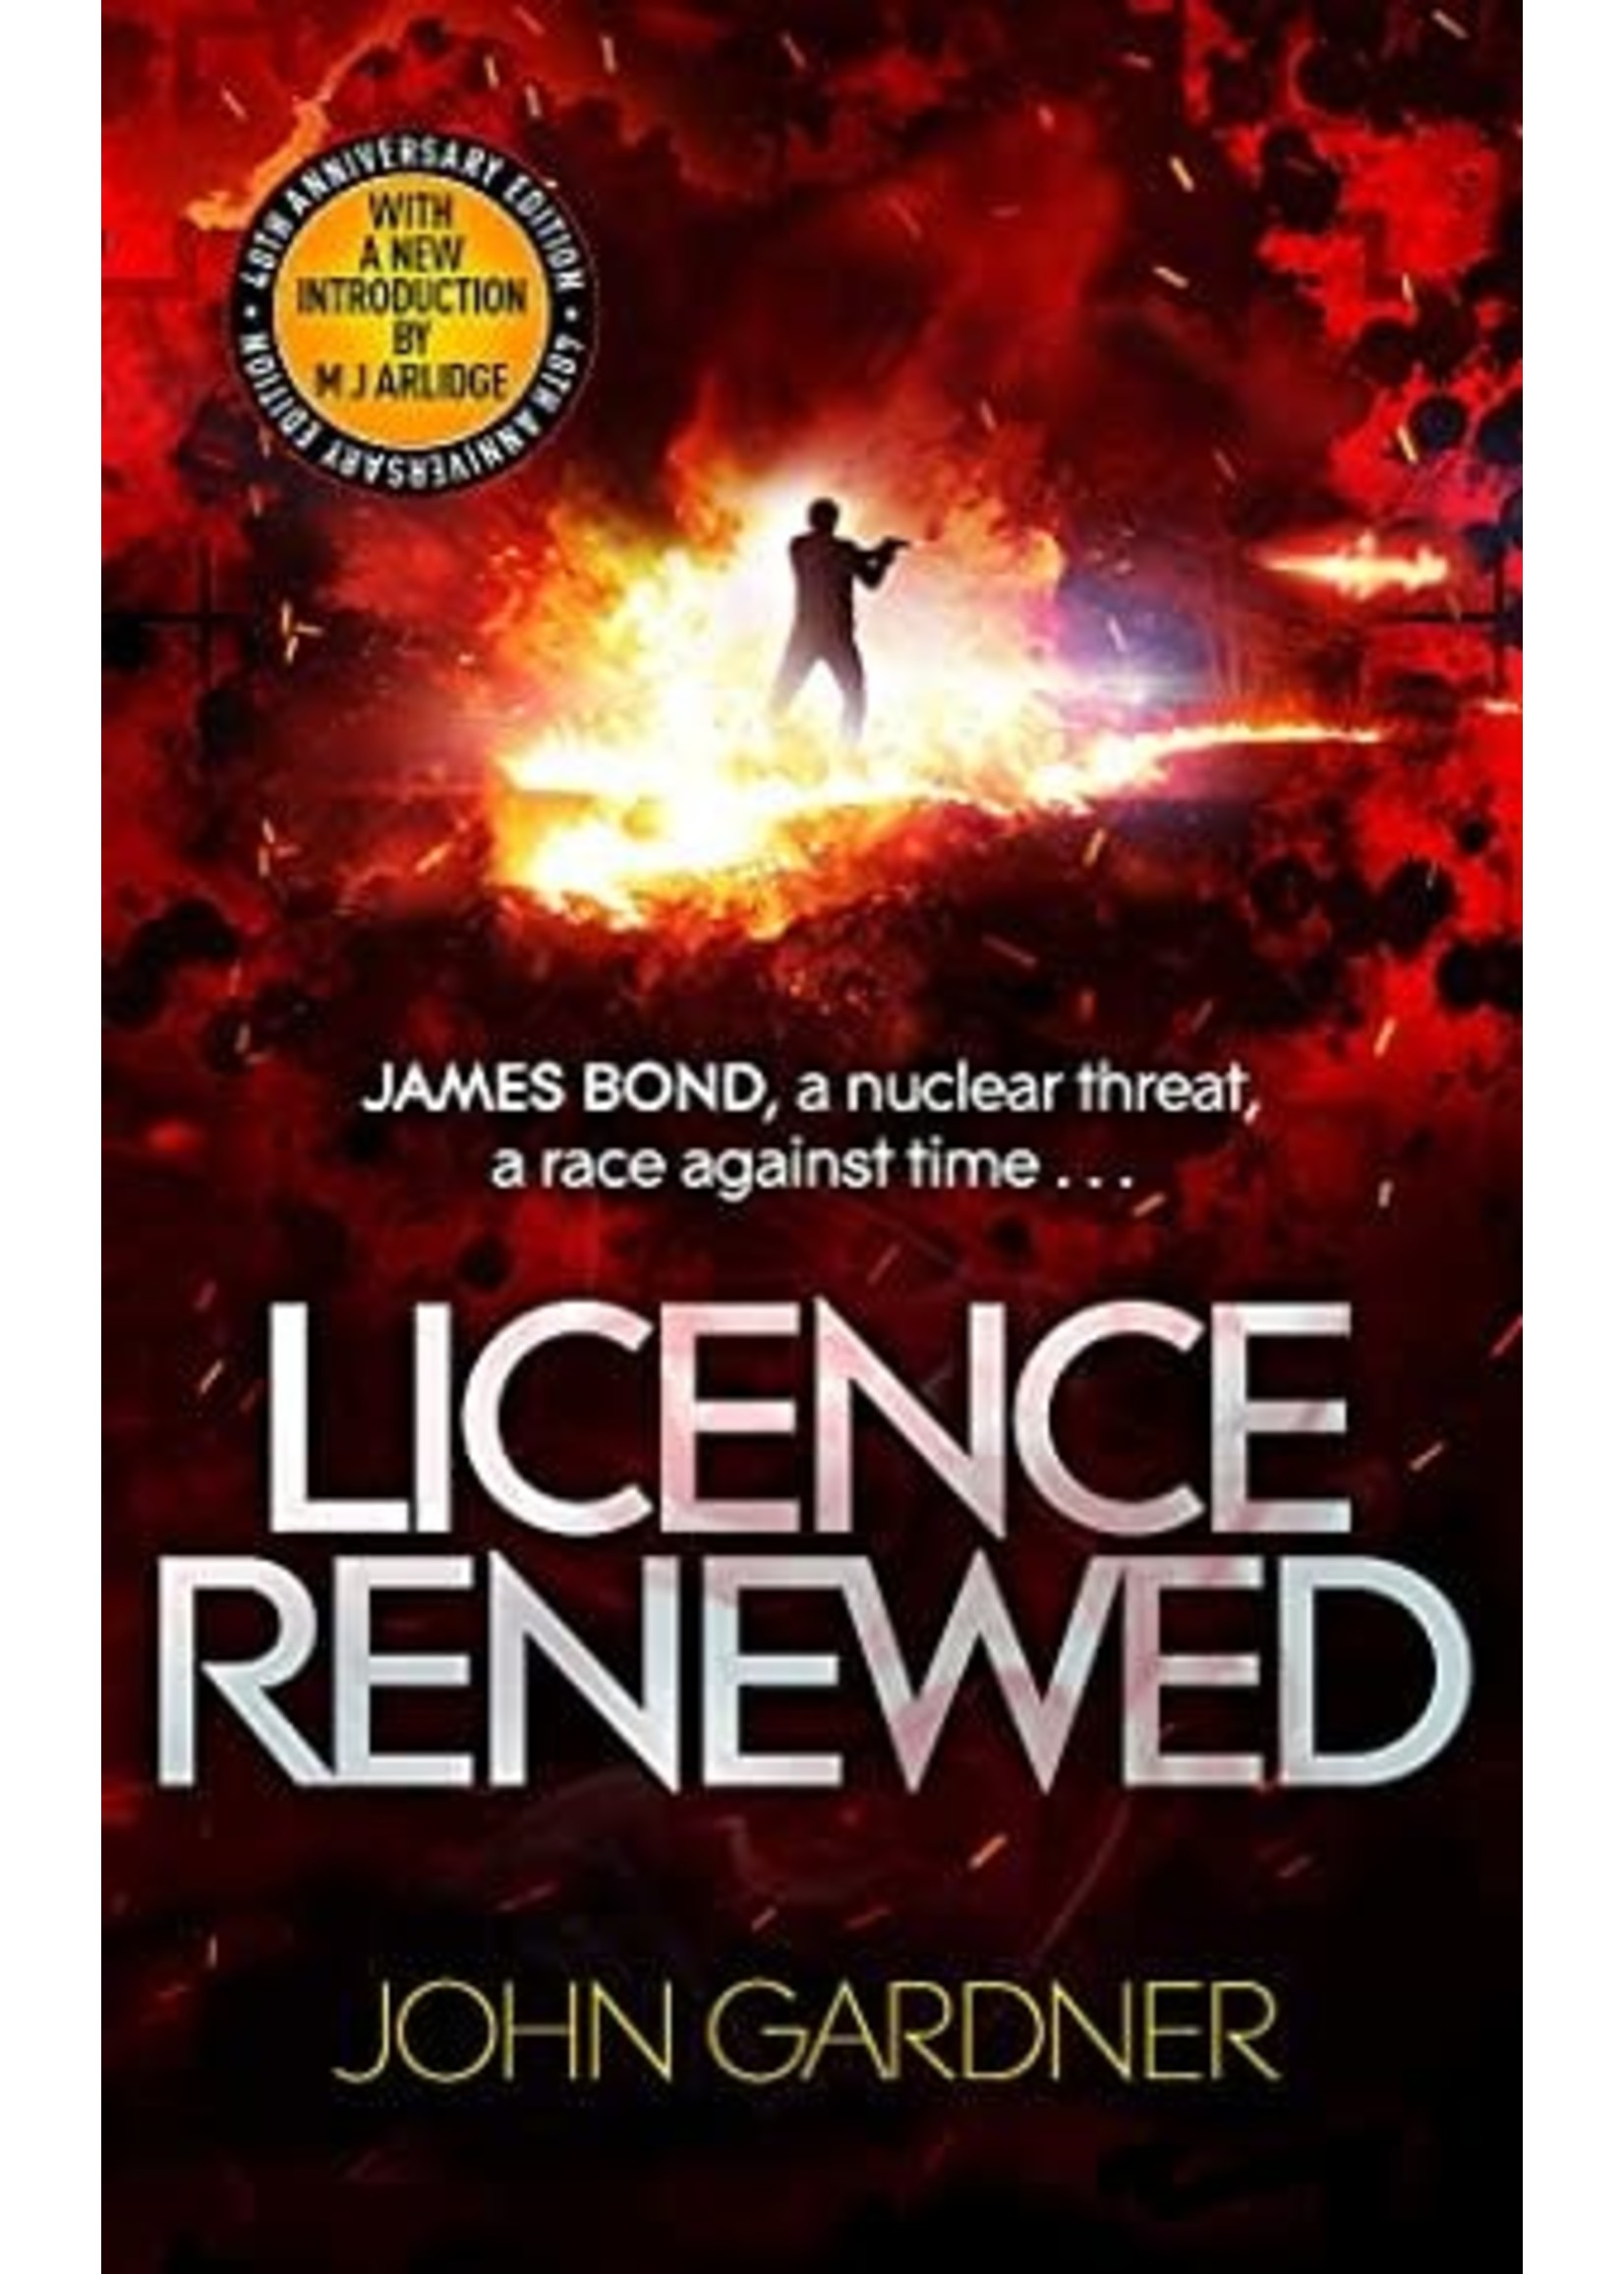 Licence Renewed by John Gardner